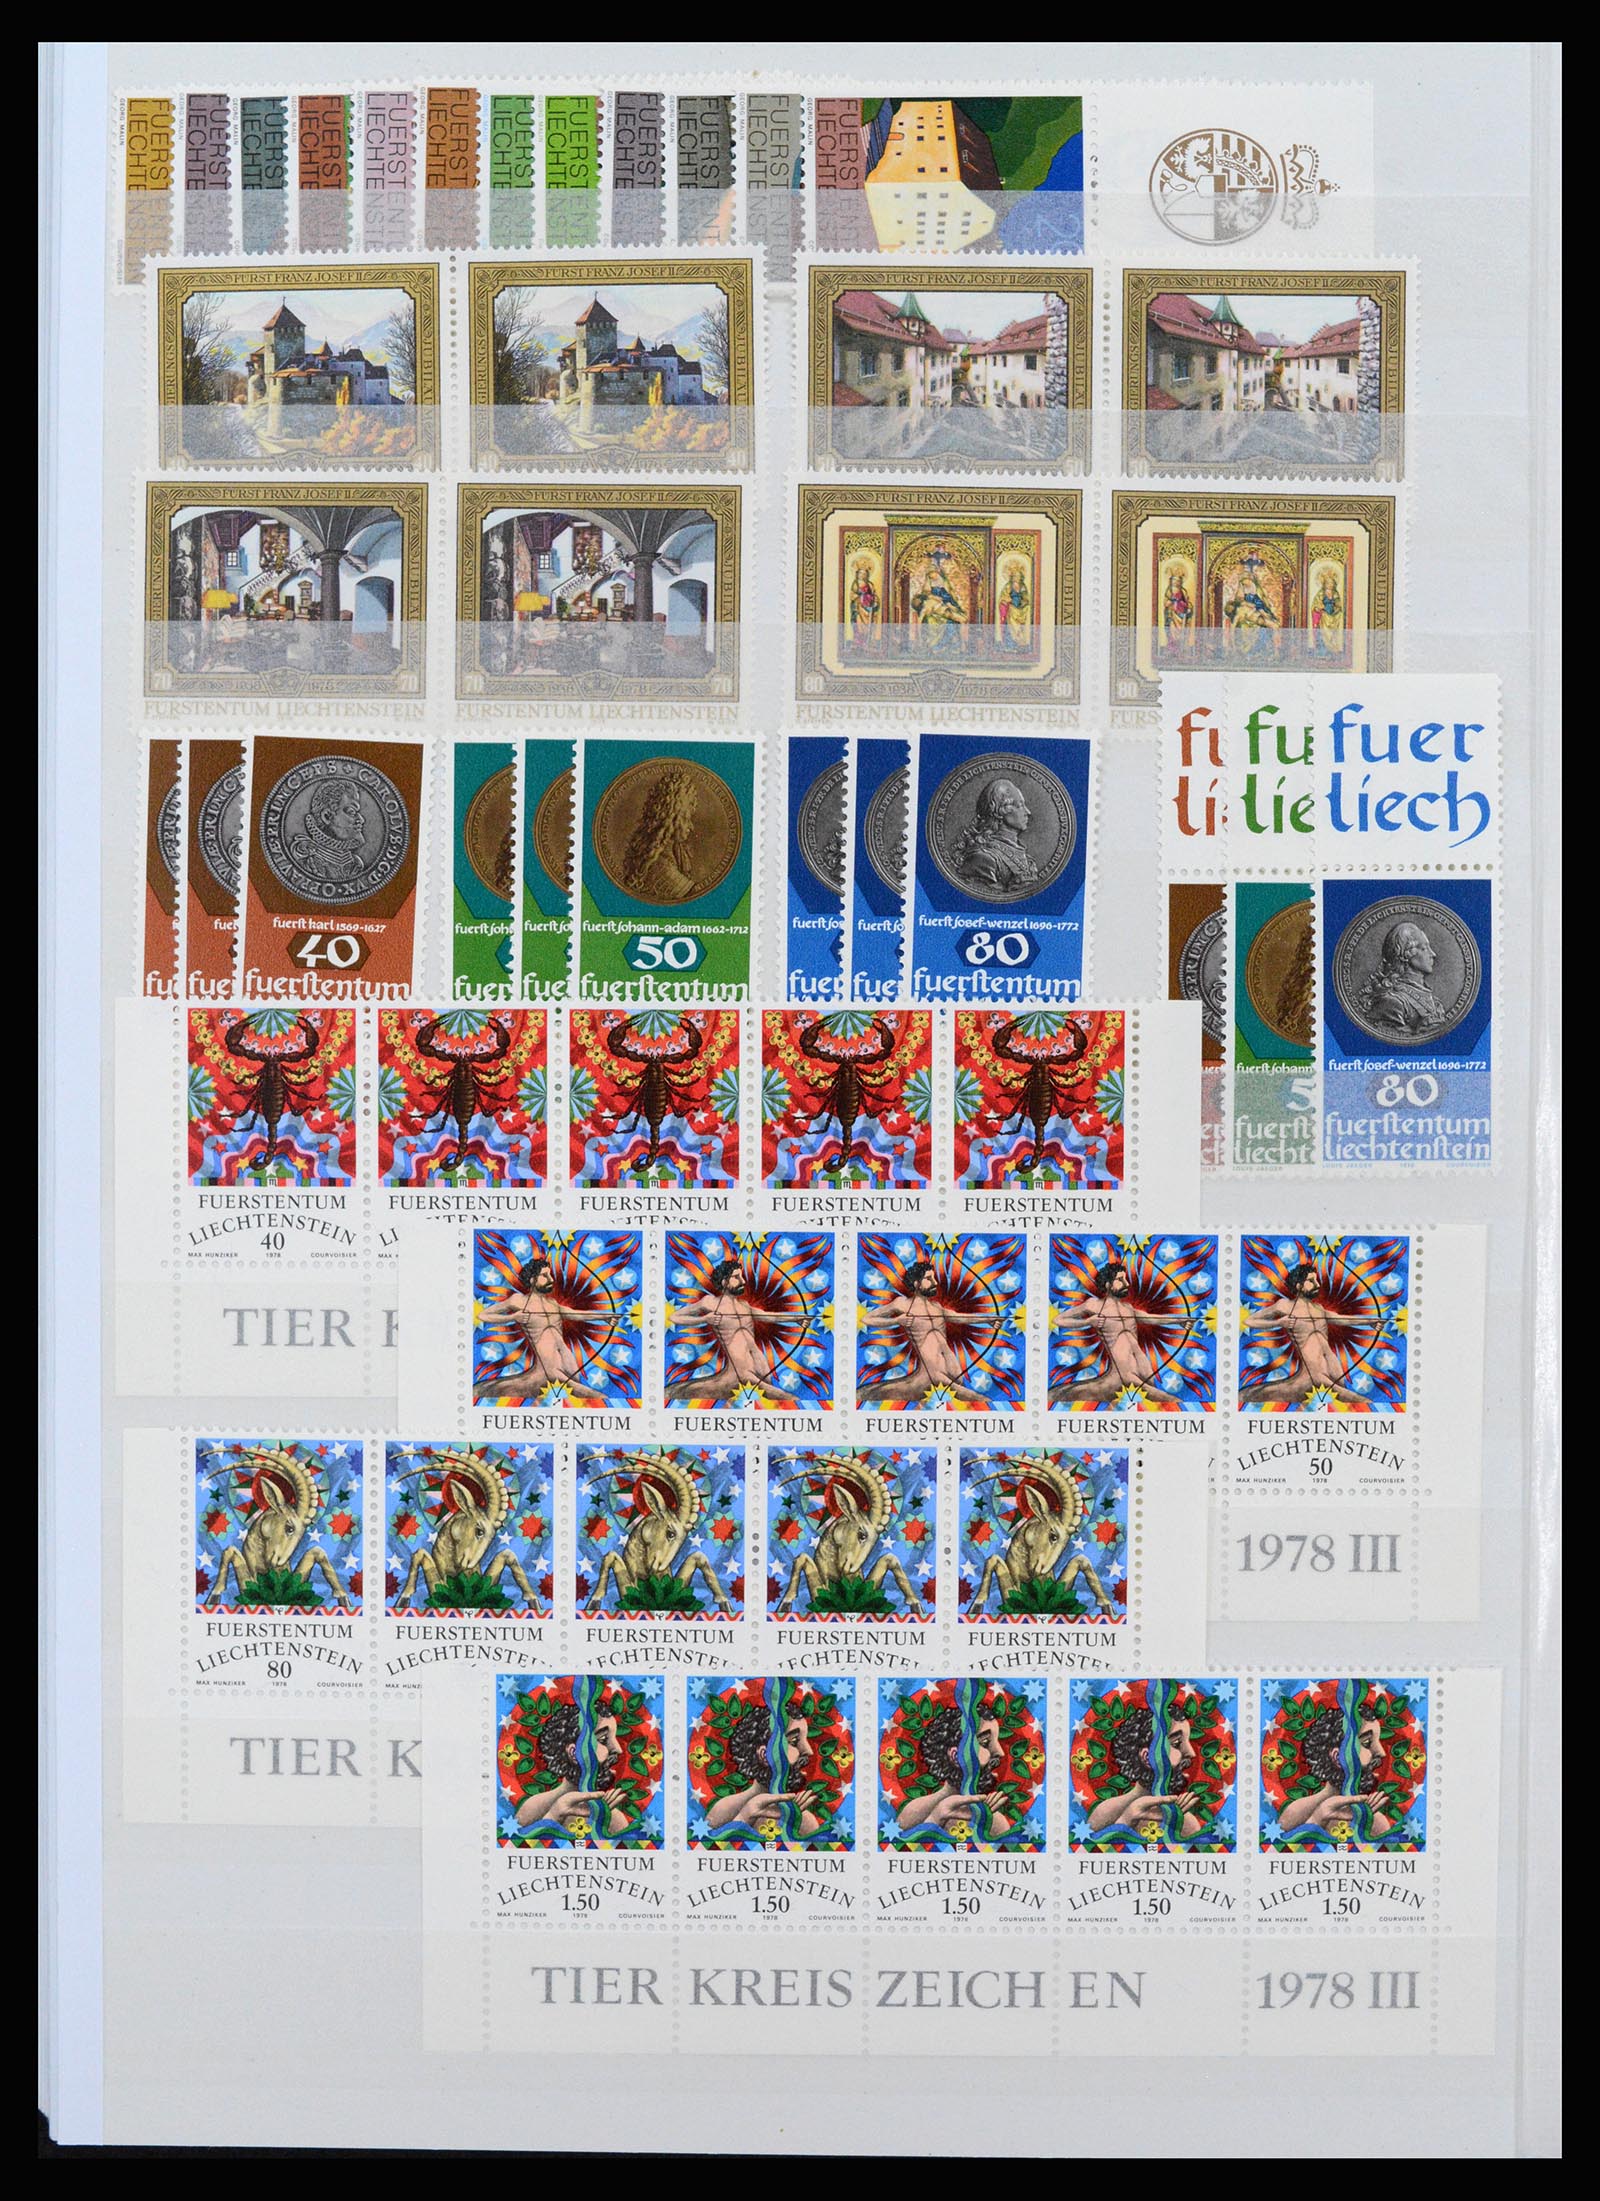 37261 054 - Stamp collection 37261 Liechtenstein 1961-1995.